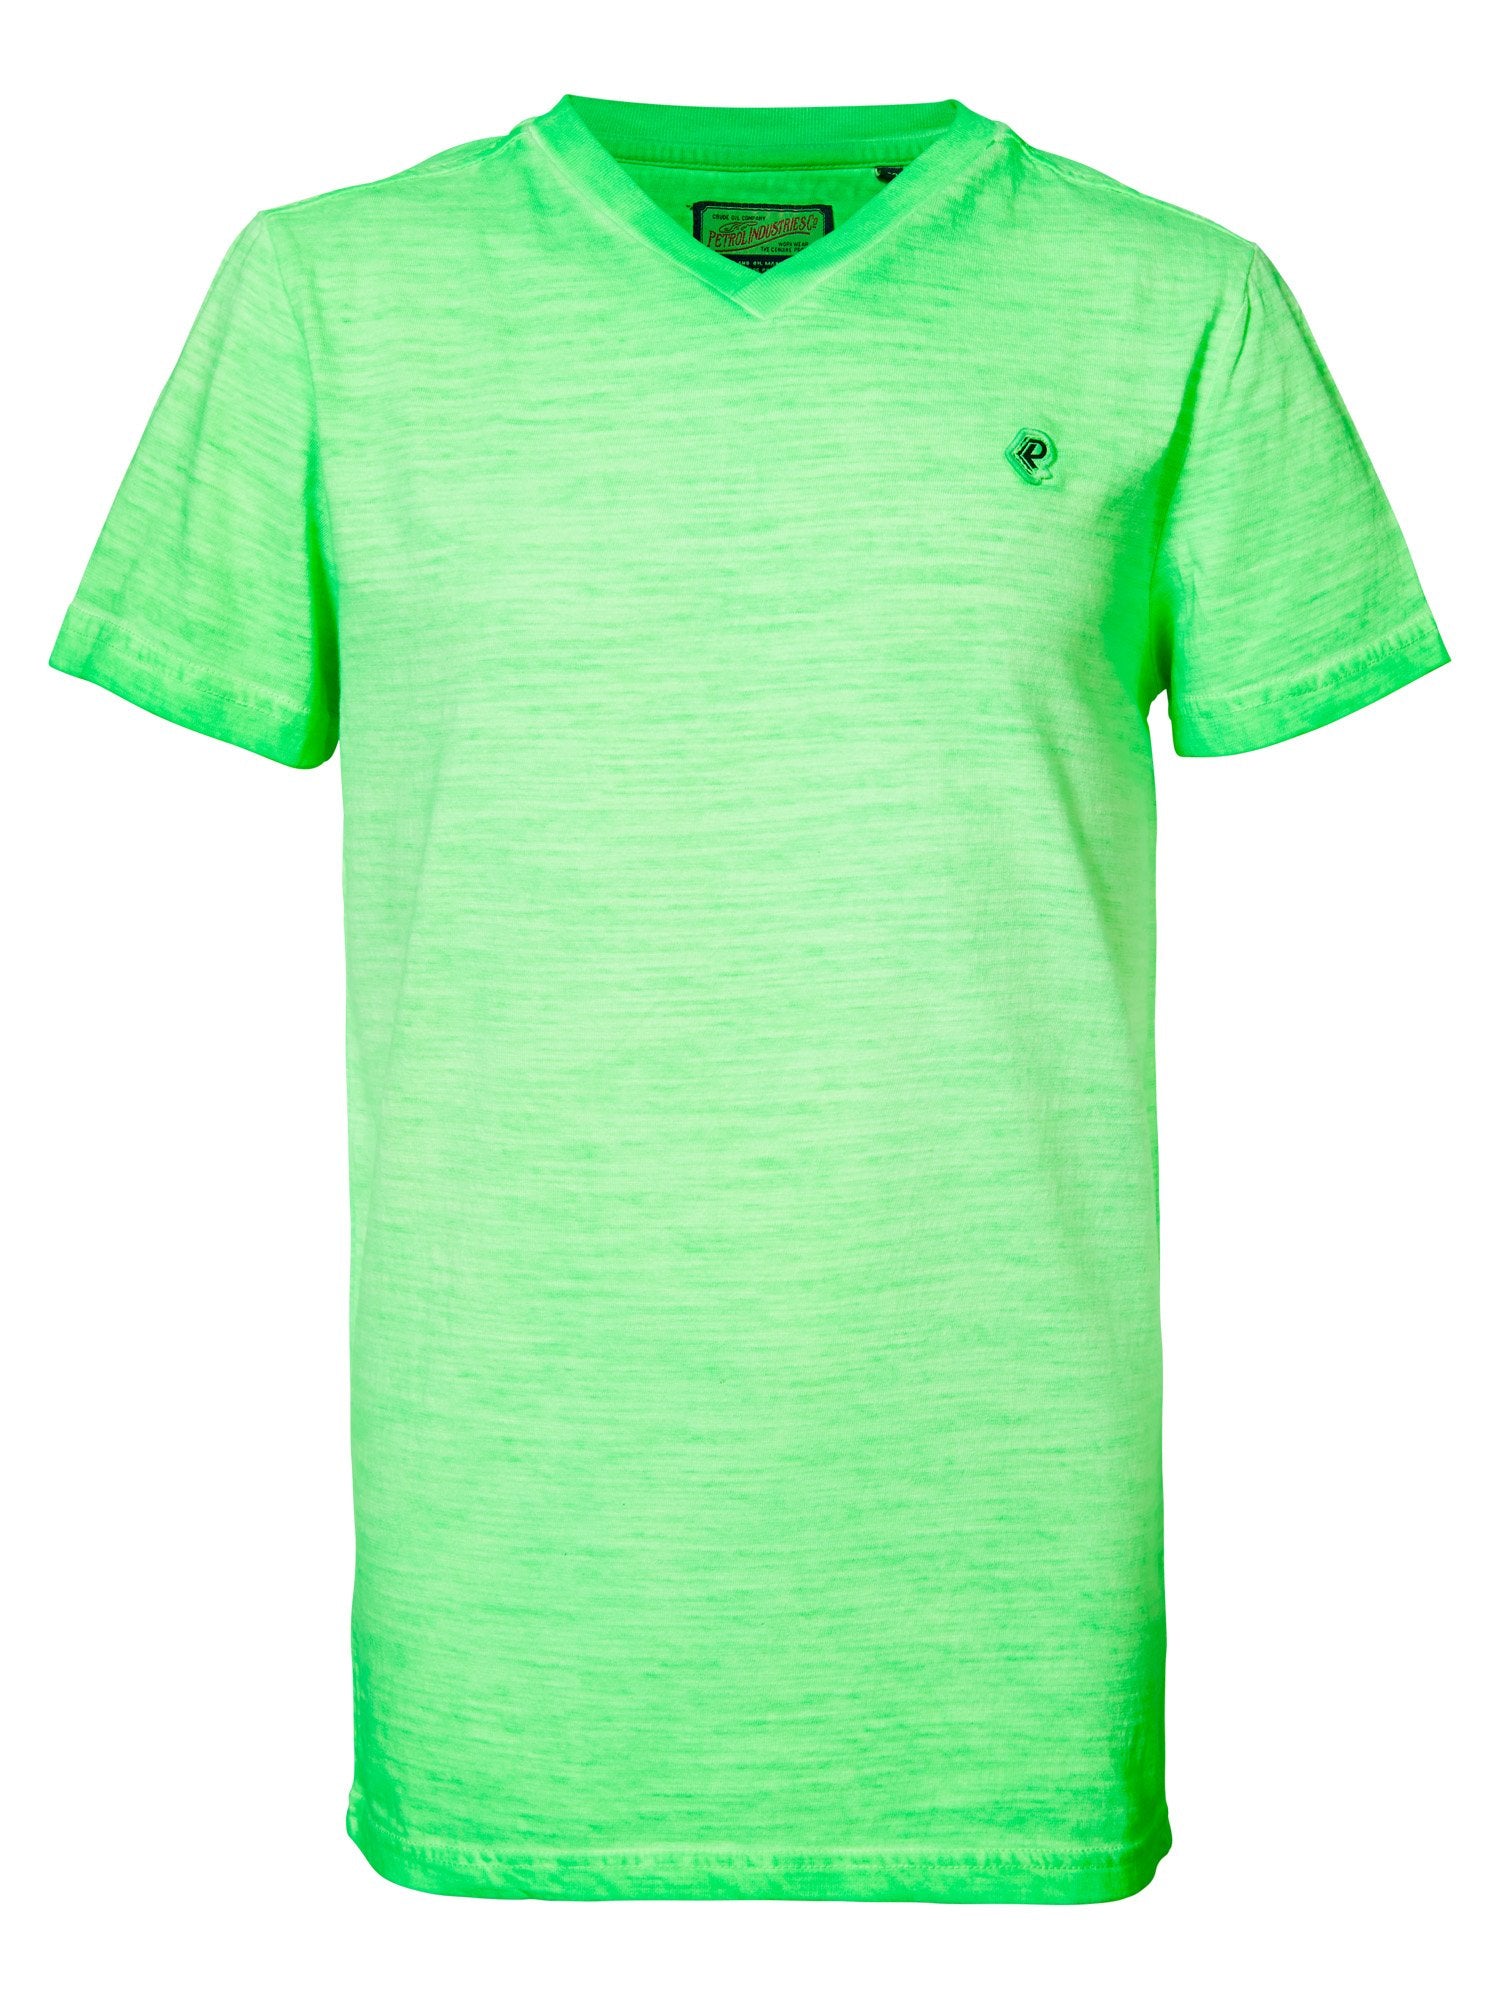 Jongens T-shirt SS V-neck van Petrol in de kleur Green Gecko in maat 176.